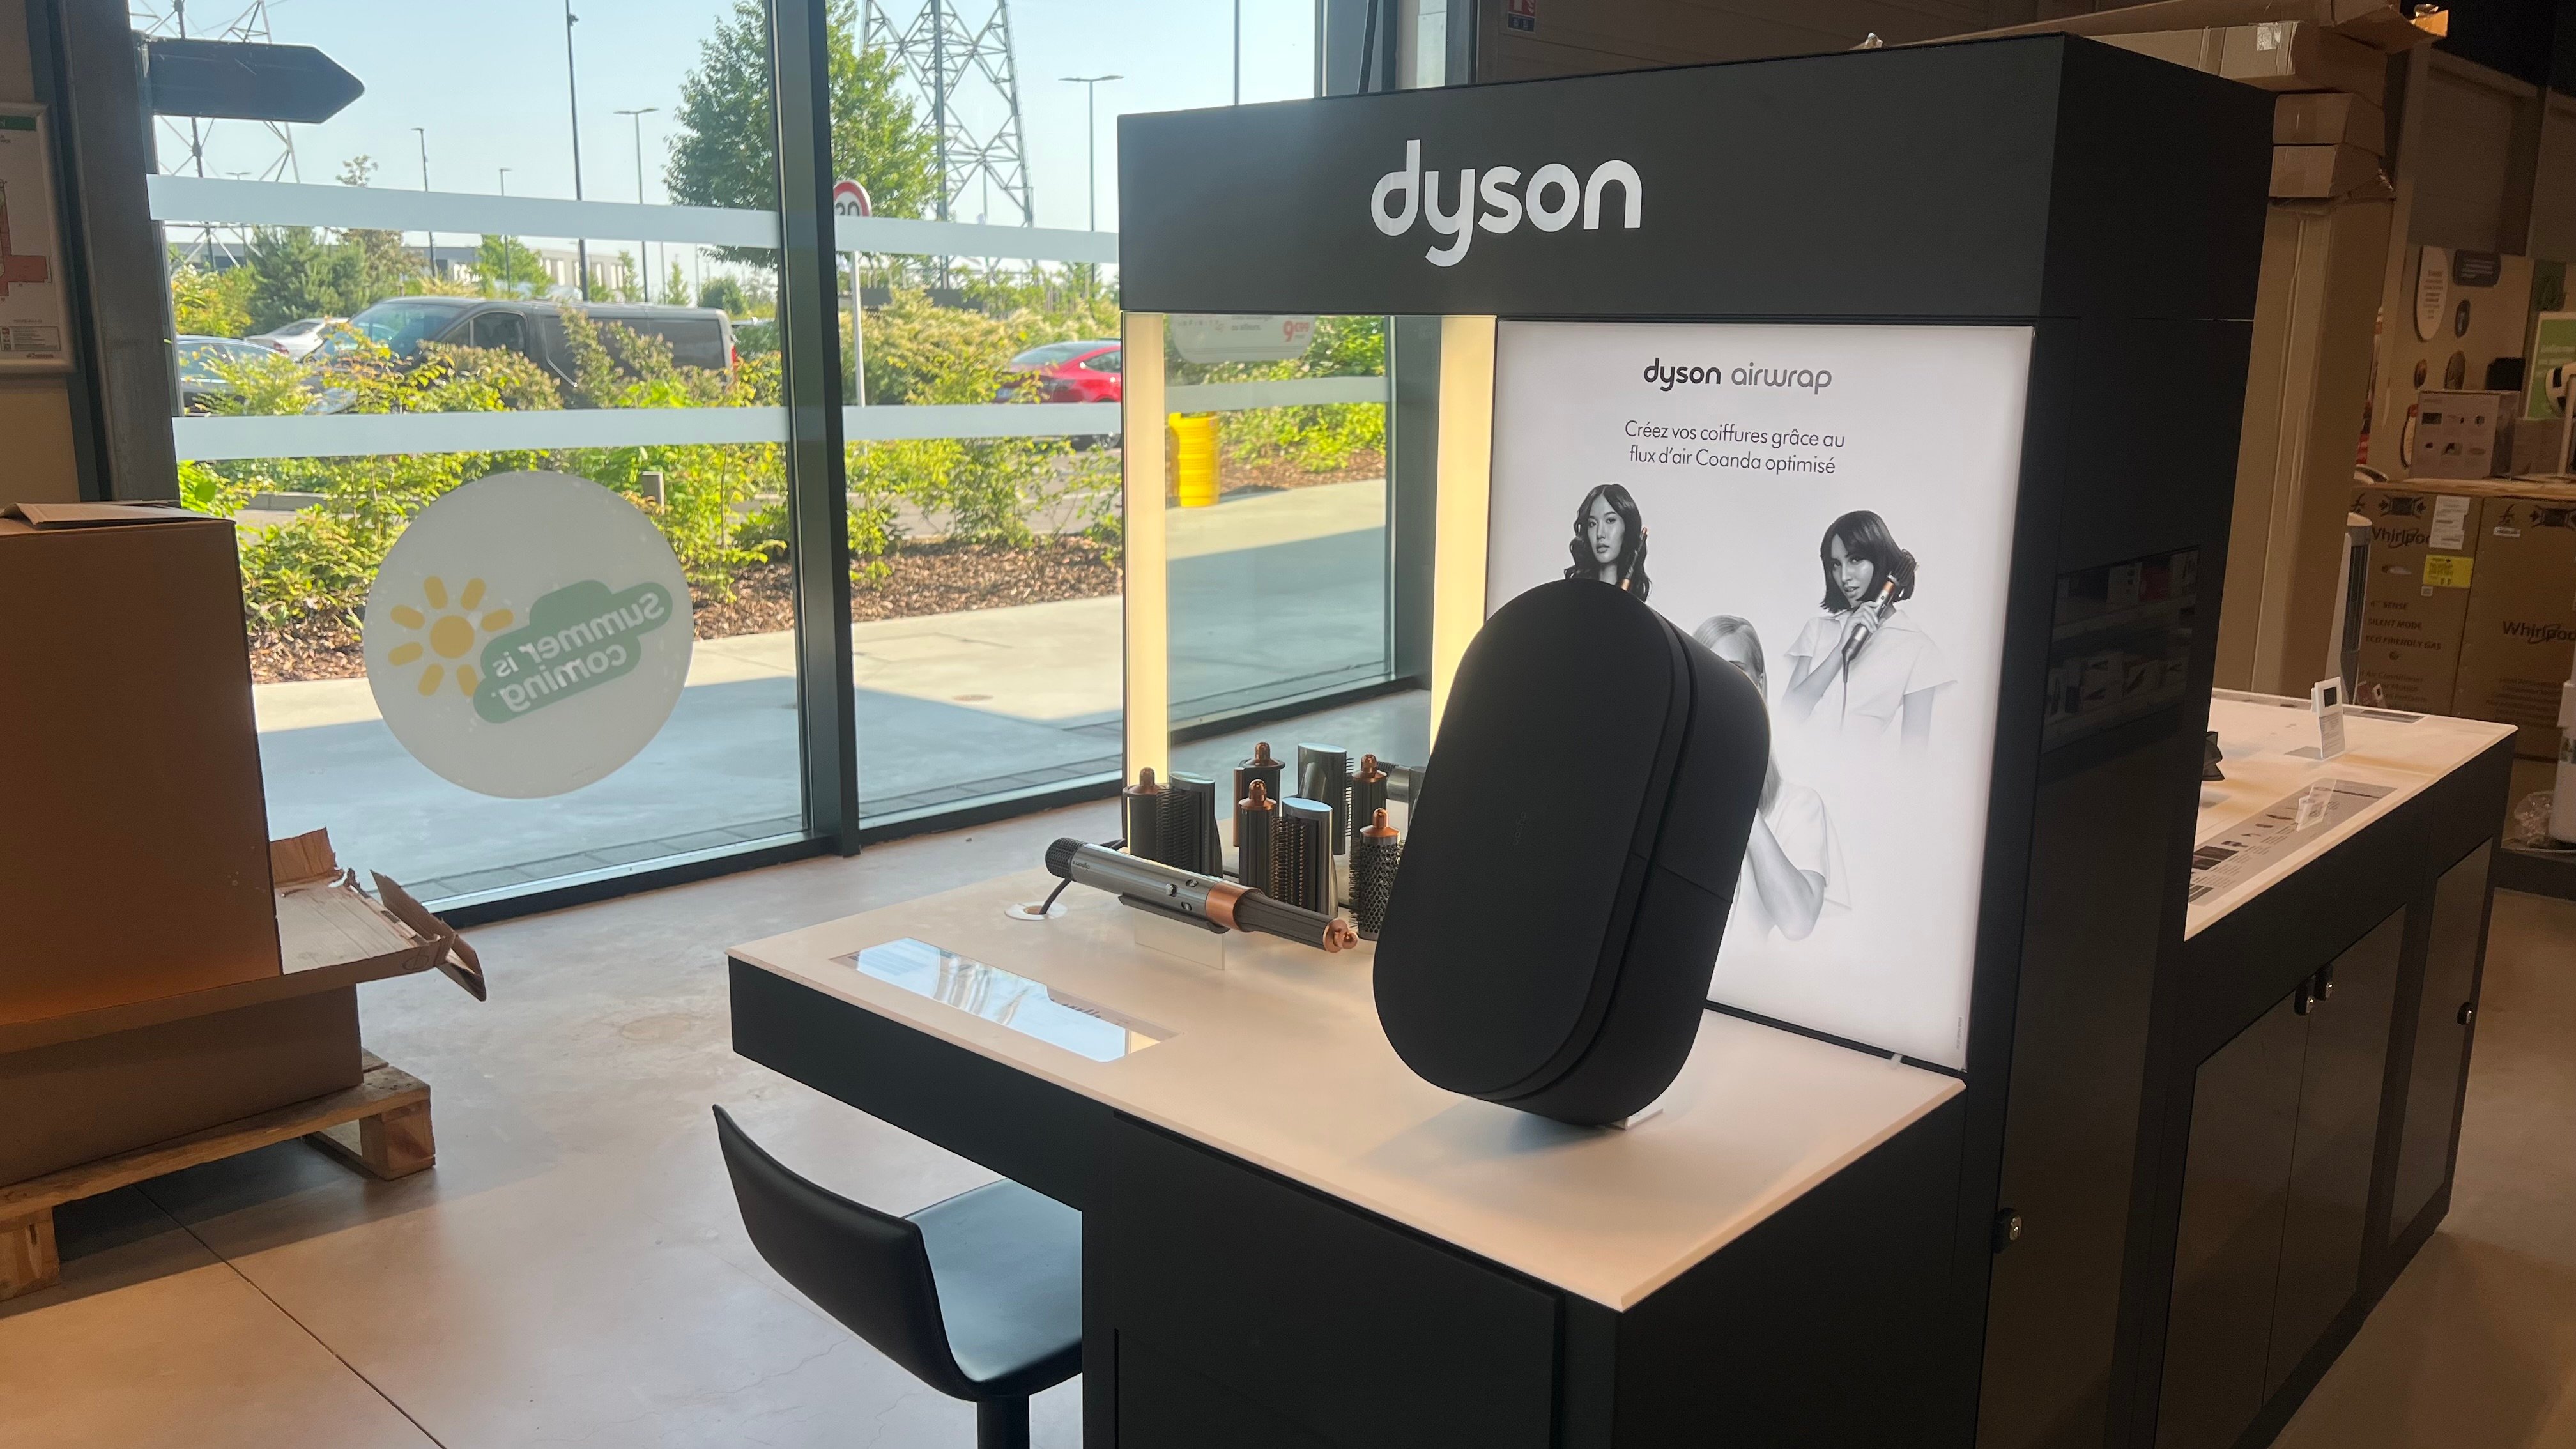 Découvrez notre espace coiffeuse Dyson dans notre magasin Boulanger Strasbourg - Reichstett !